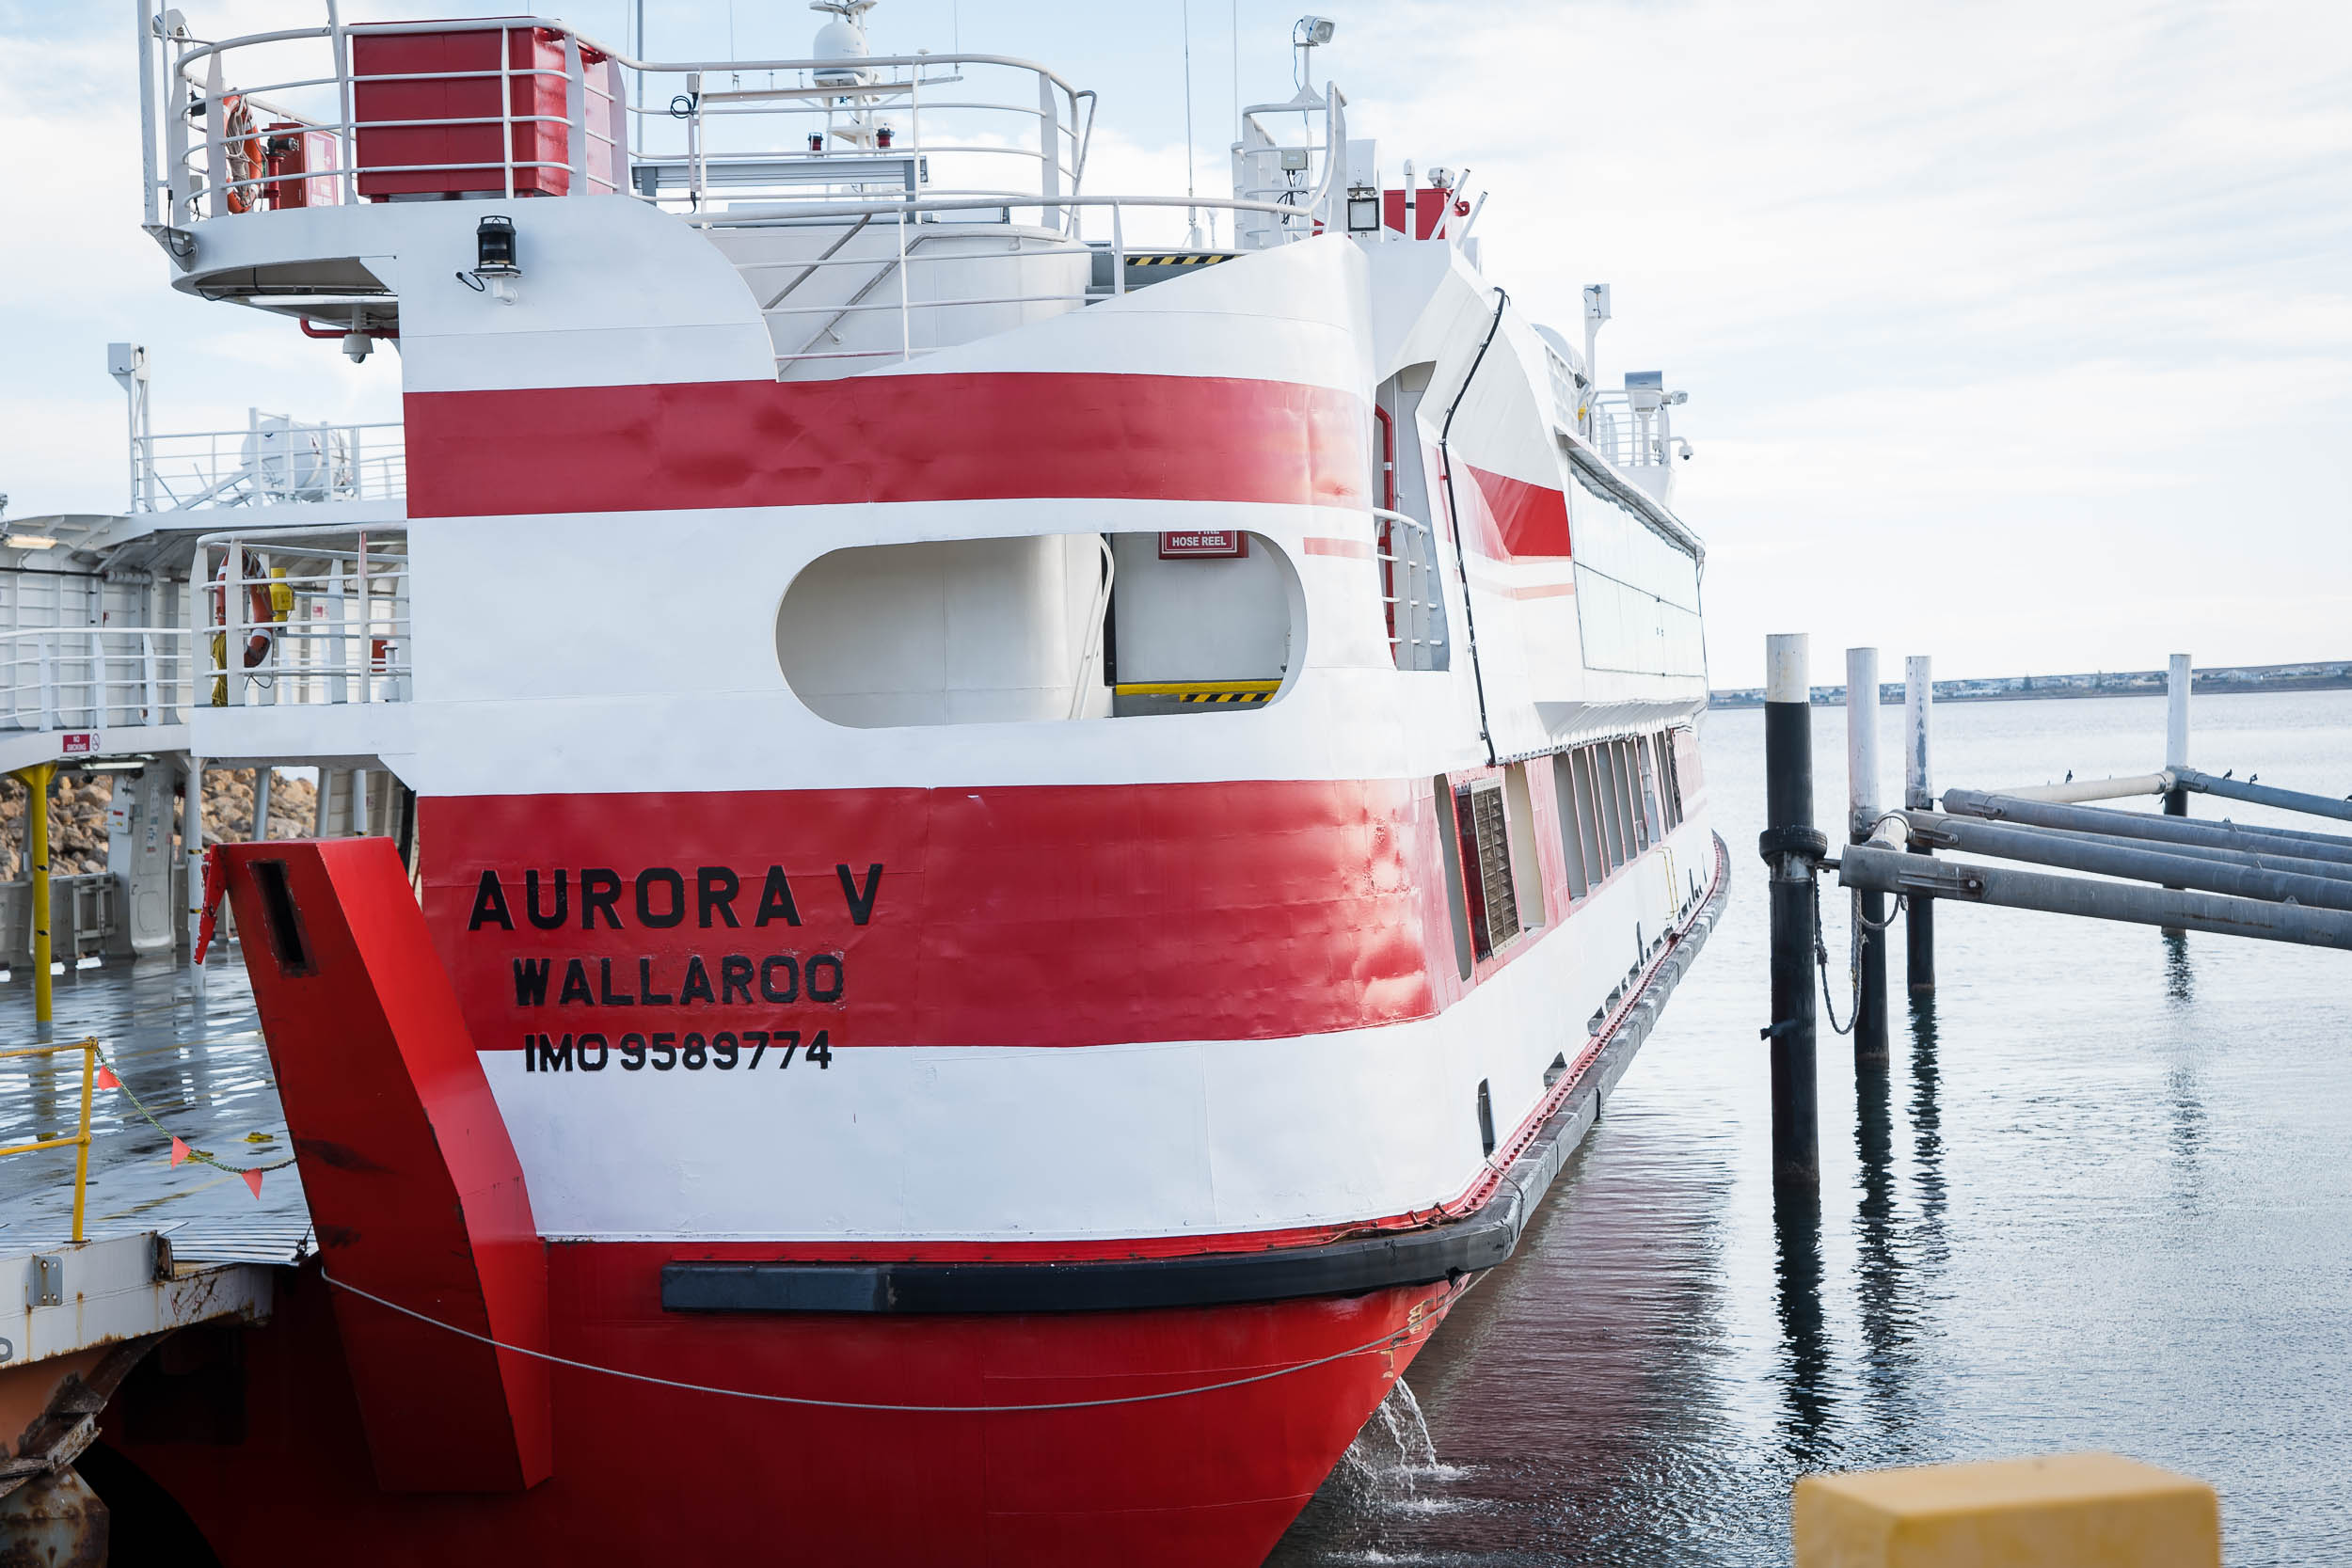 Aurora V docked